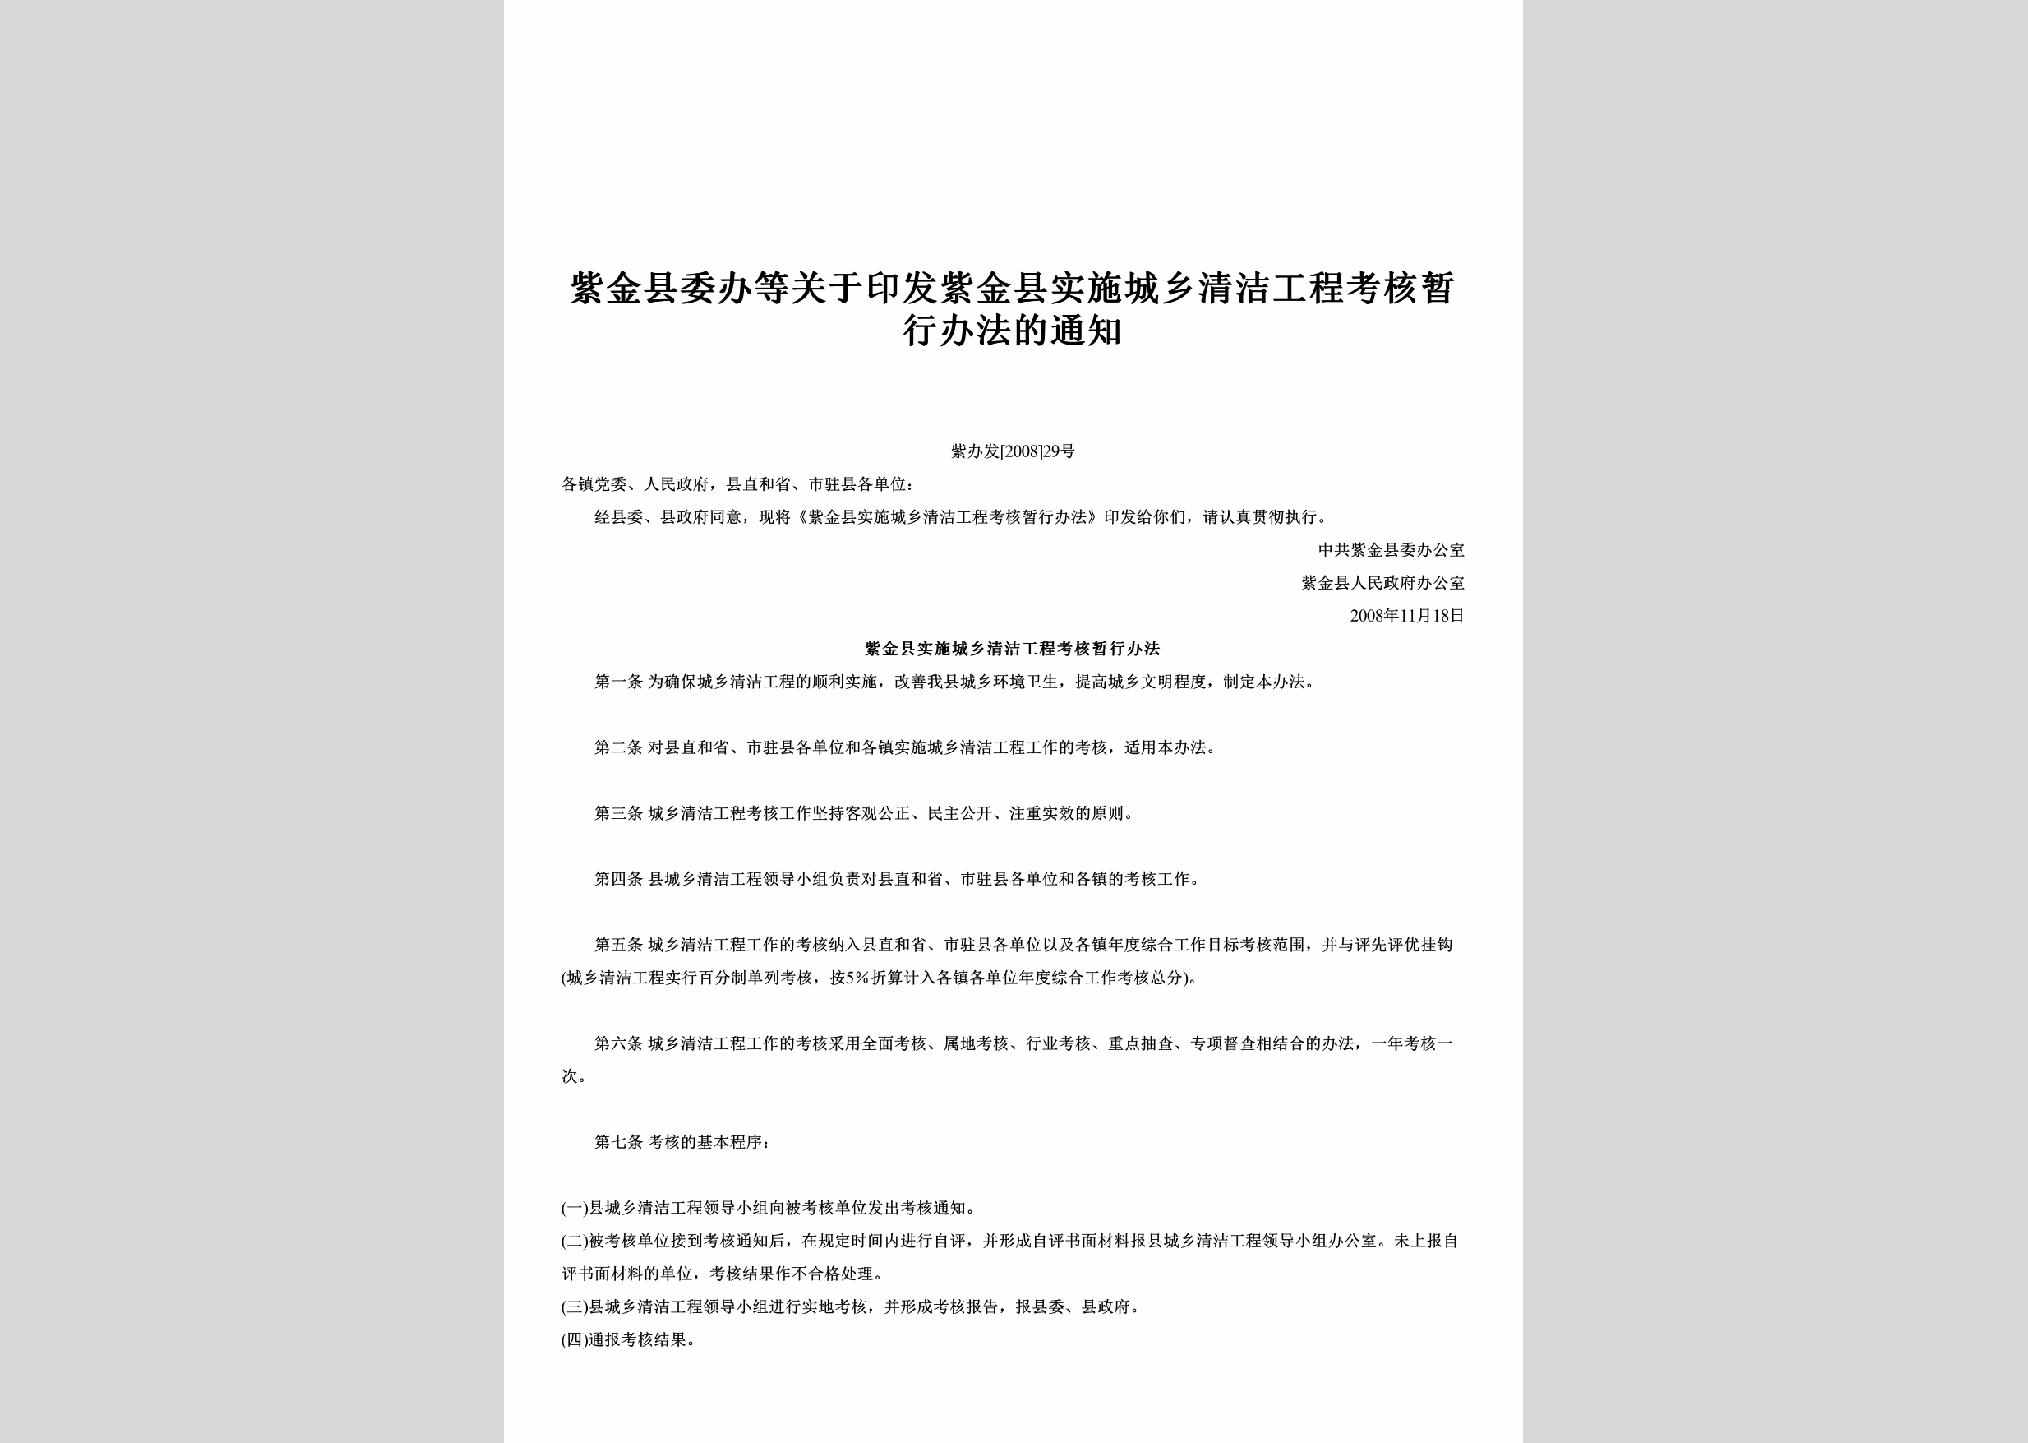 紫办发[2008]29号：关于印发紫金县实施城乡清洁工程考核暂行办法的通知